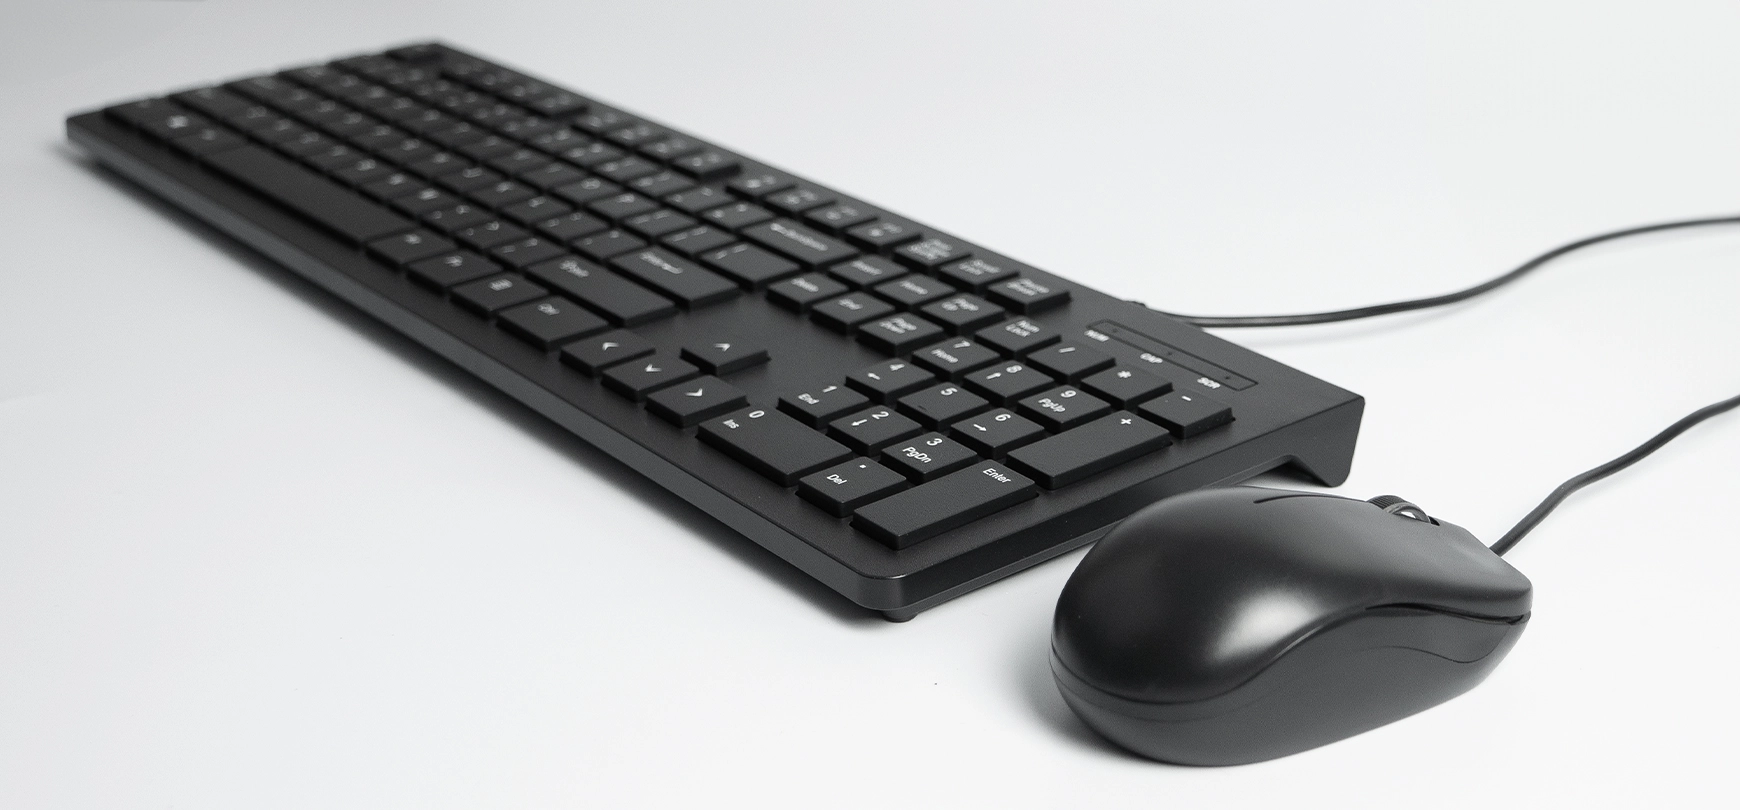 Minimalistyczny zestaw komputerowy - mysz i klawiatura, czarny